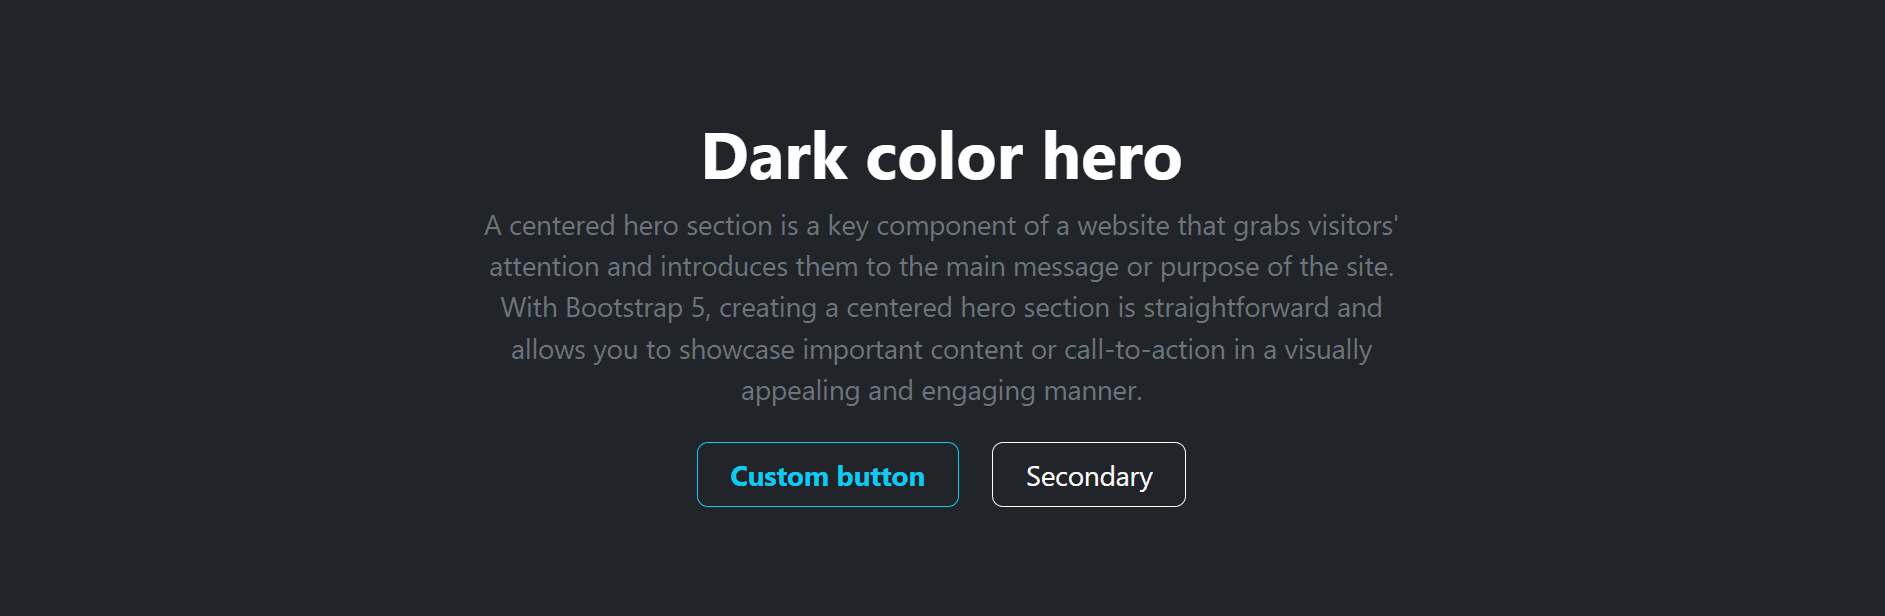 dark hero